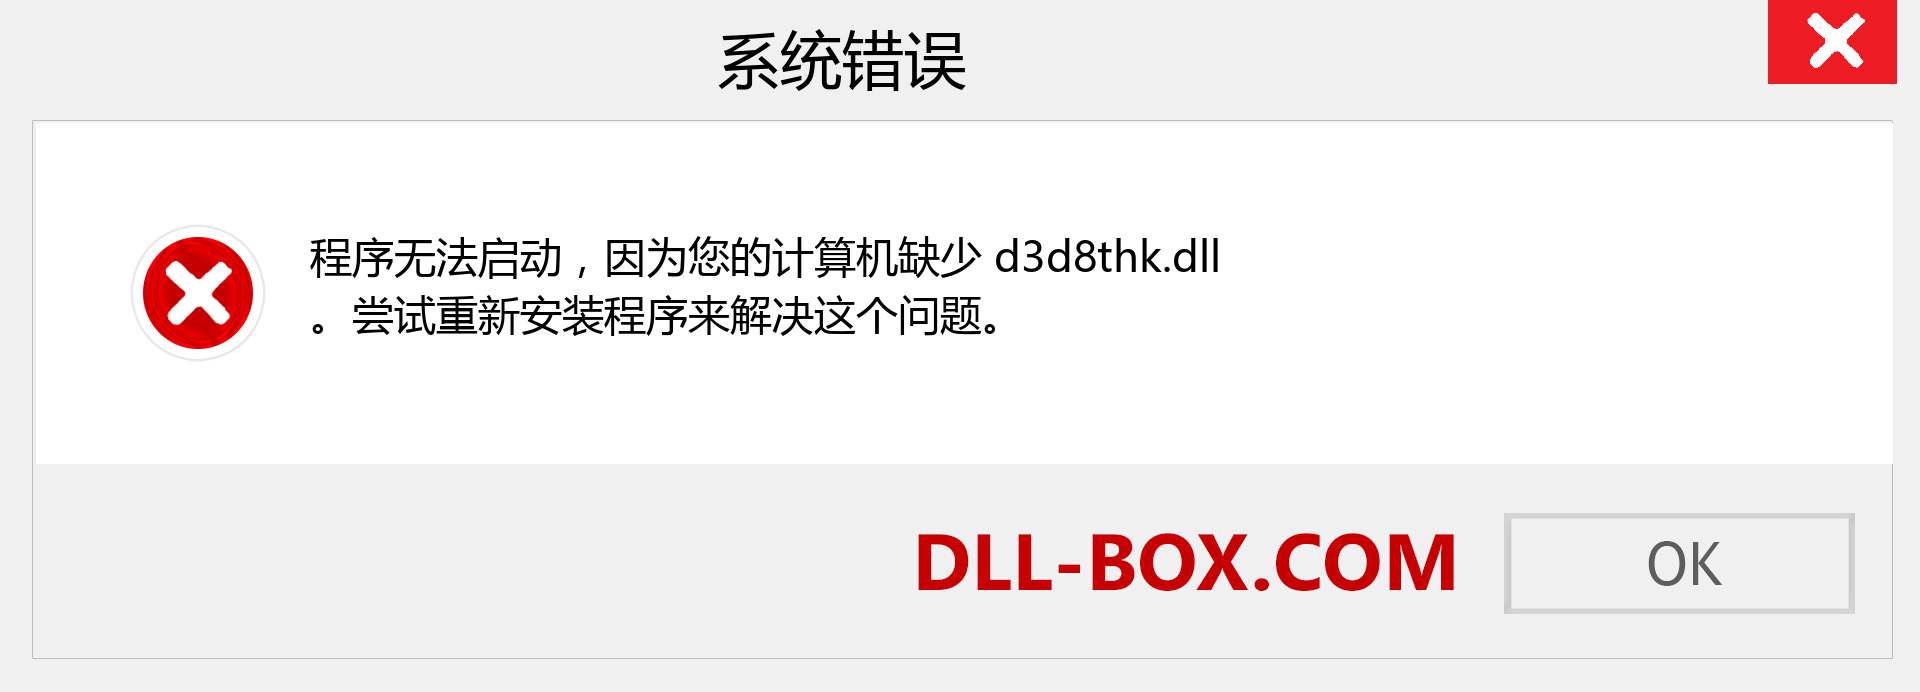 d3d8thk.dll 文件丢失？。 适用于 Windows 7、8、10 的下载 - 修复 Windows、照片、图像上的 d3d8thk dll 丢失错误